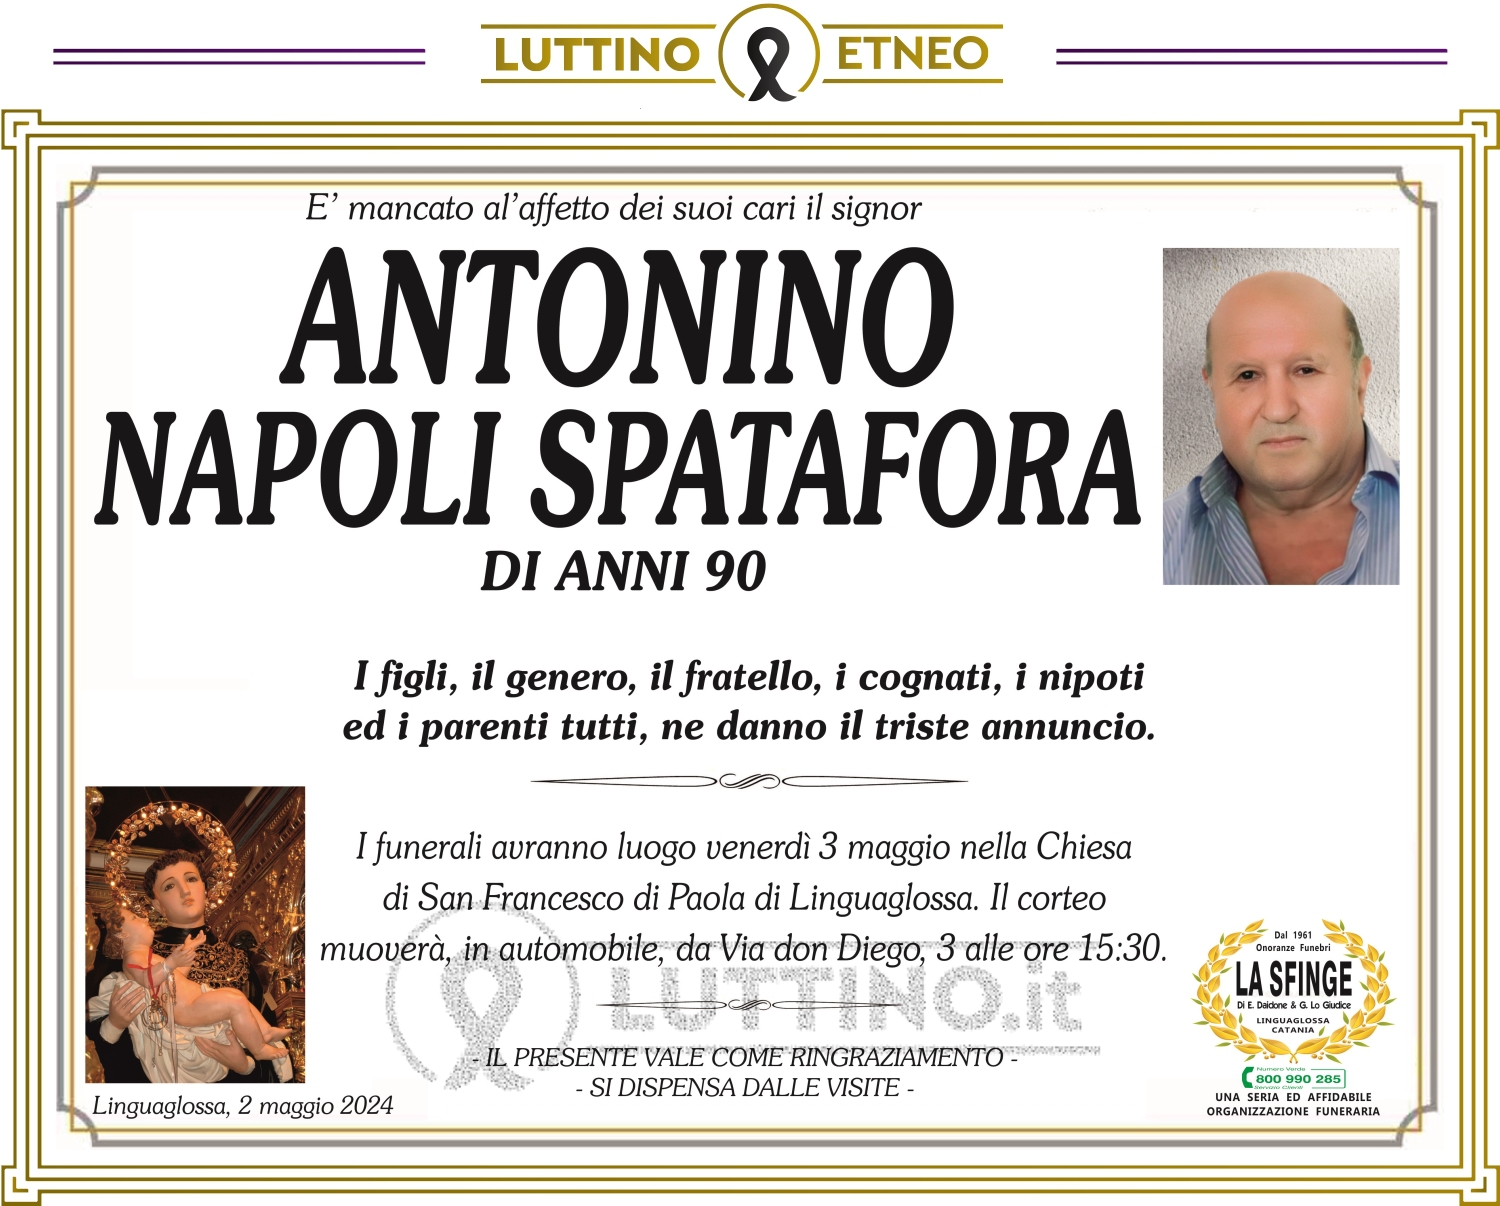 Antonino Napoli Spatafora